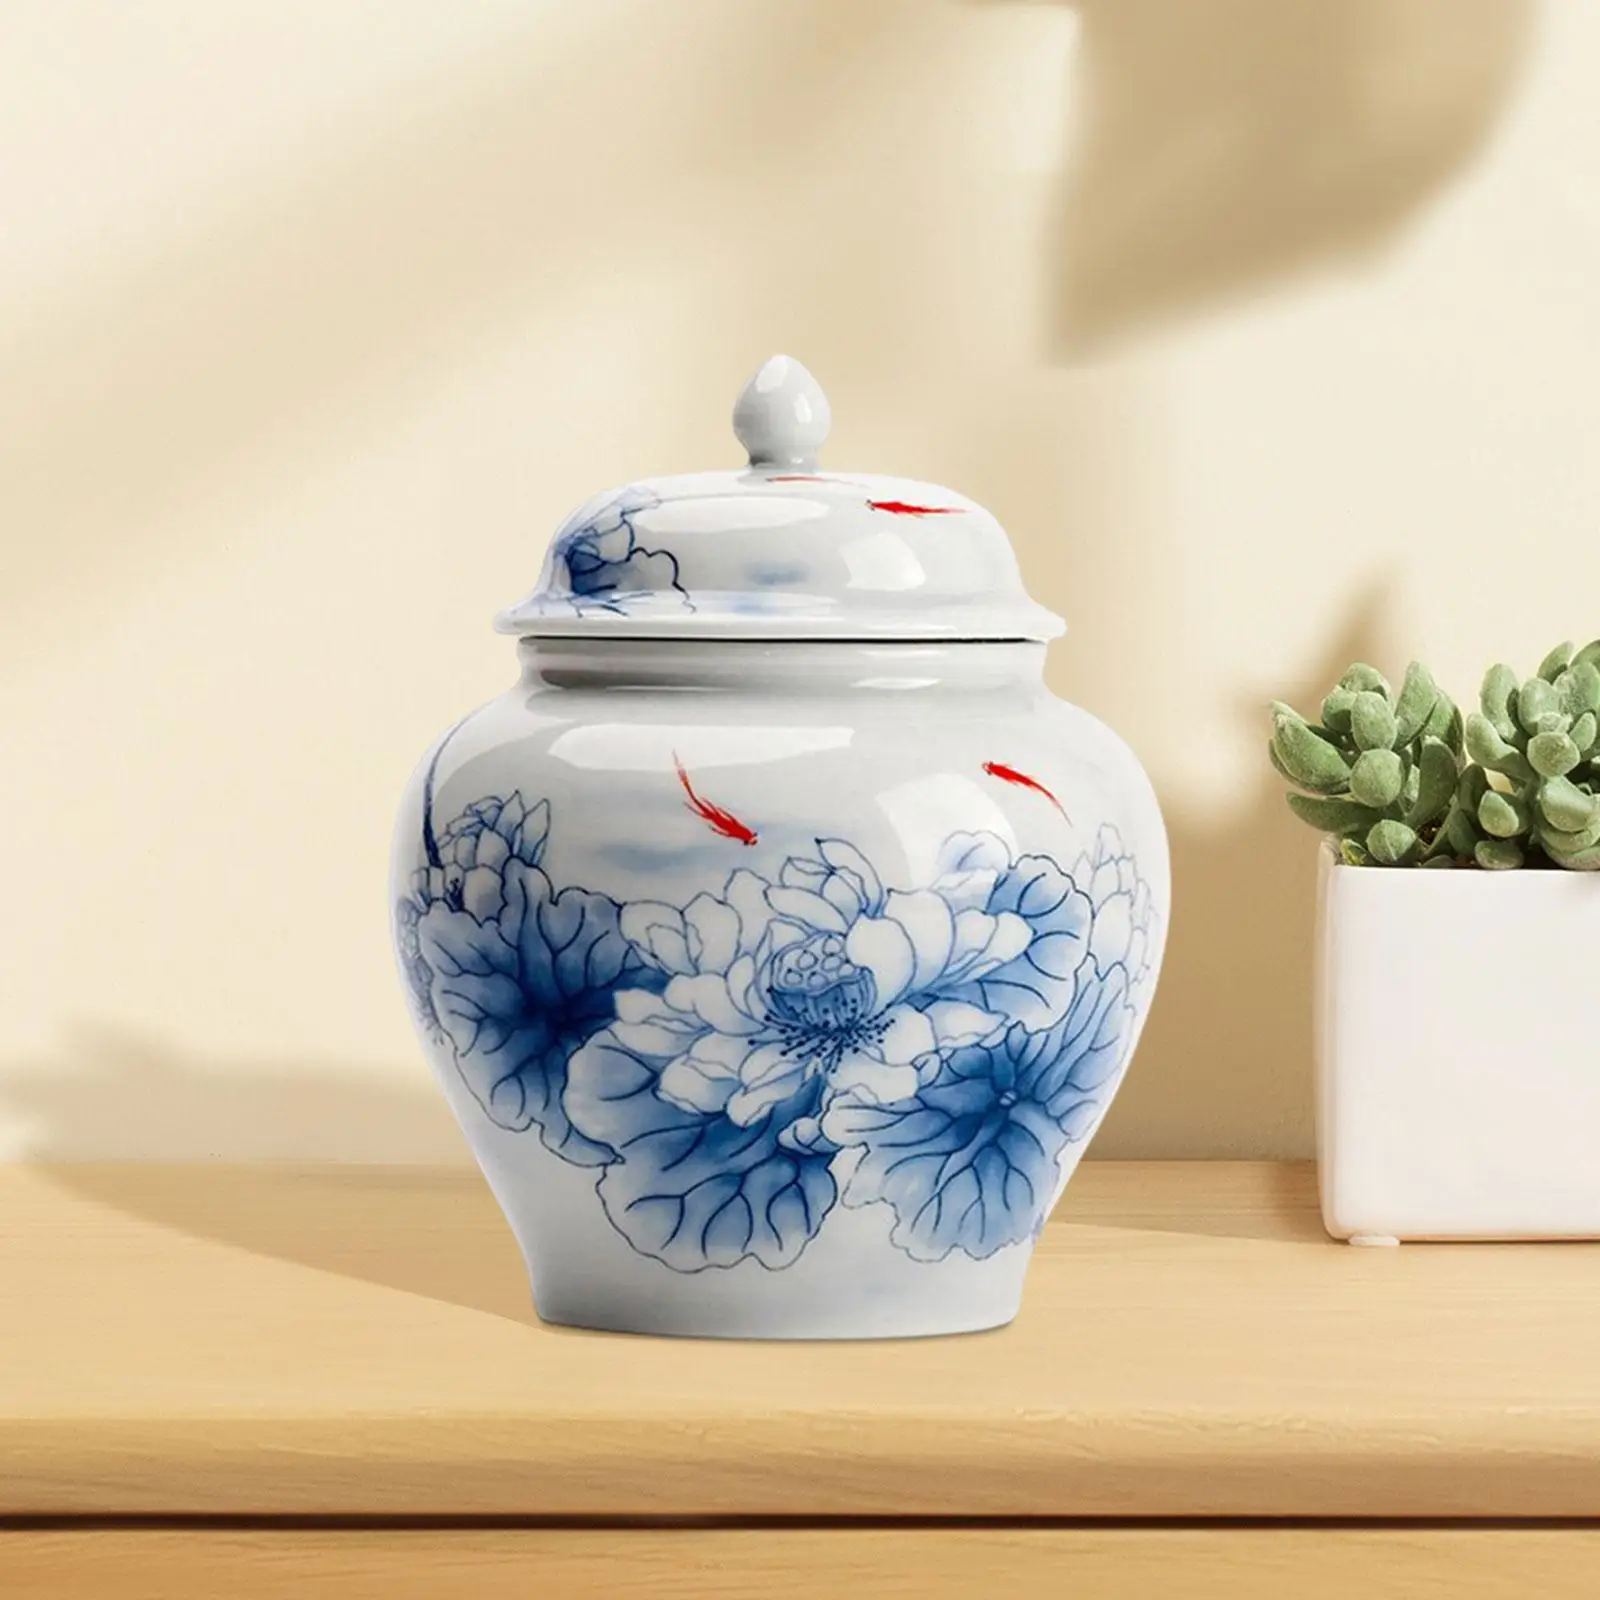 Blue and White Porcelain Ginger Jar Storage Jar Decorative Flower Vase